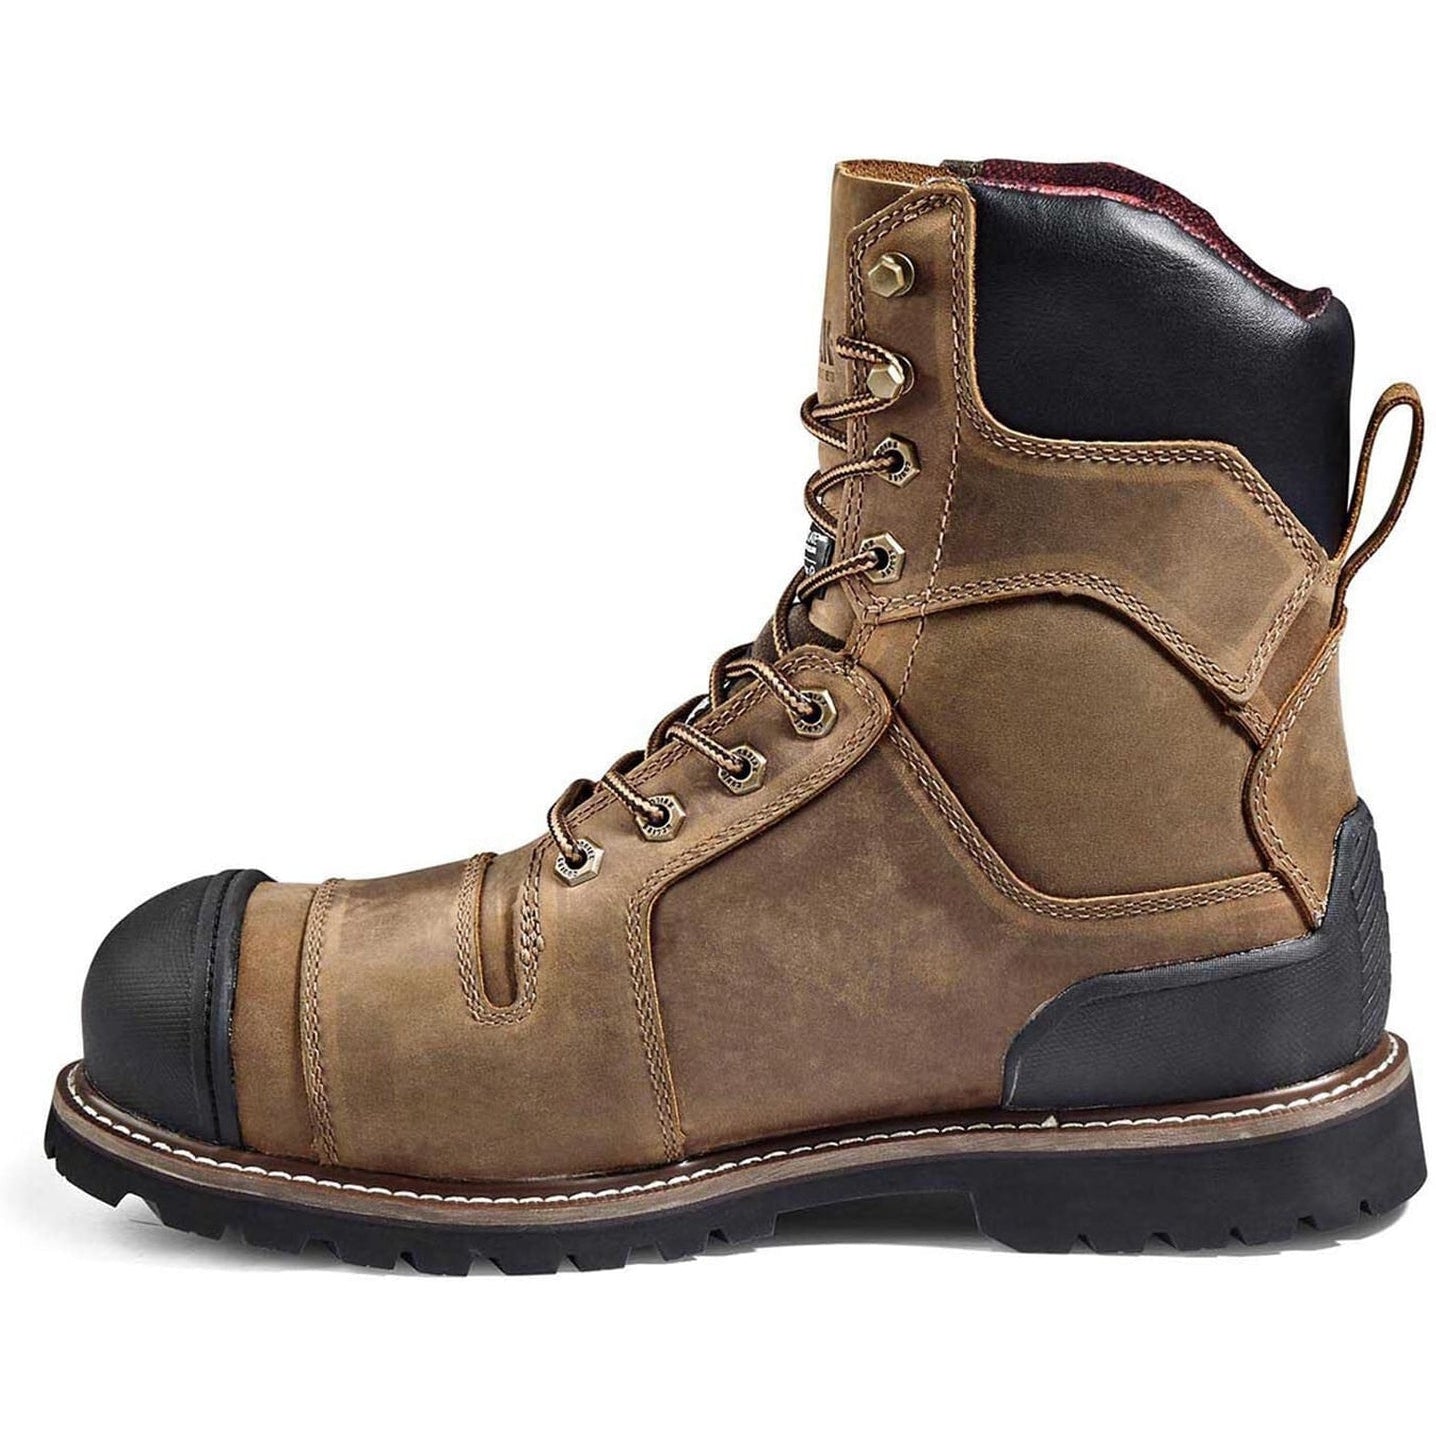 Kodiak Men's Generations Widebody 8" Comp Toe WP Work Boot -Brown- 4TGCBN  - Overlook Boots